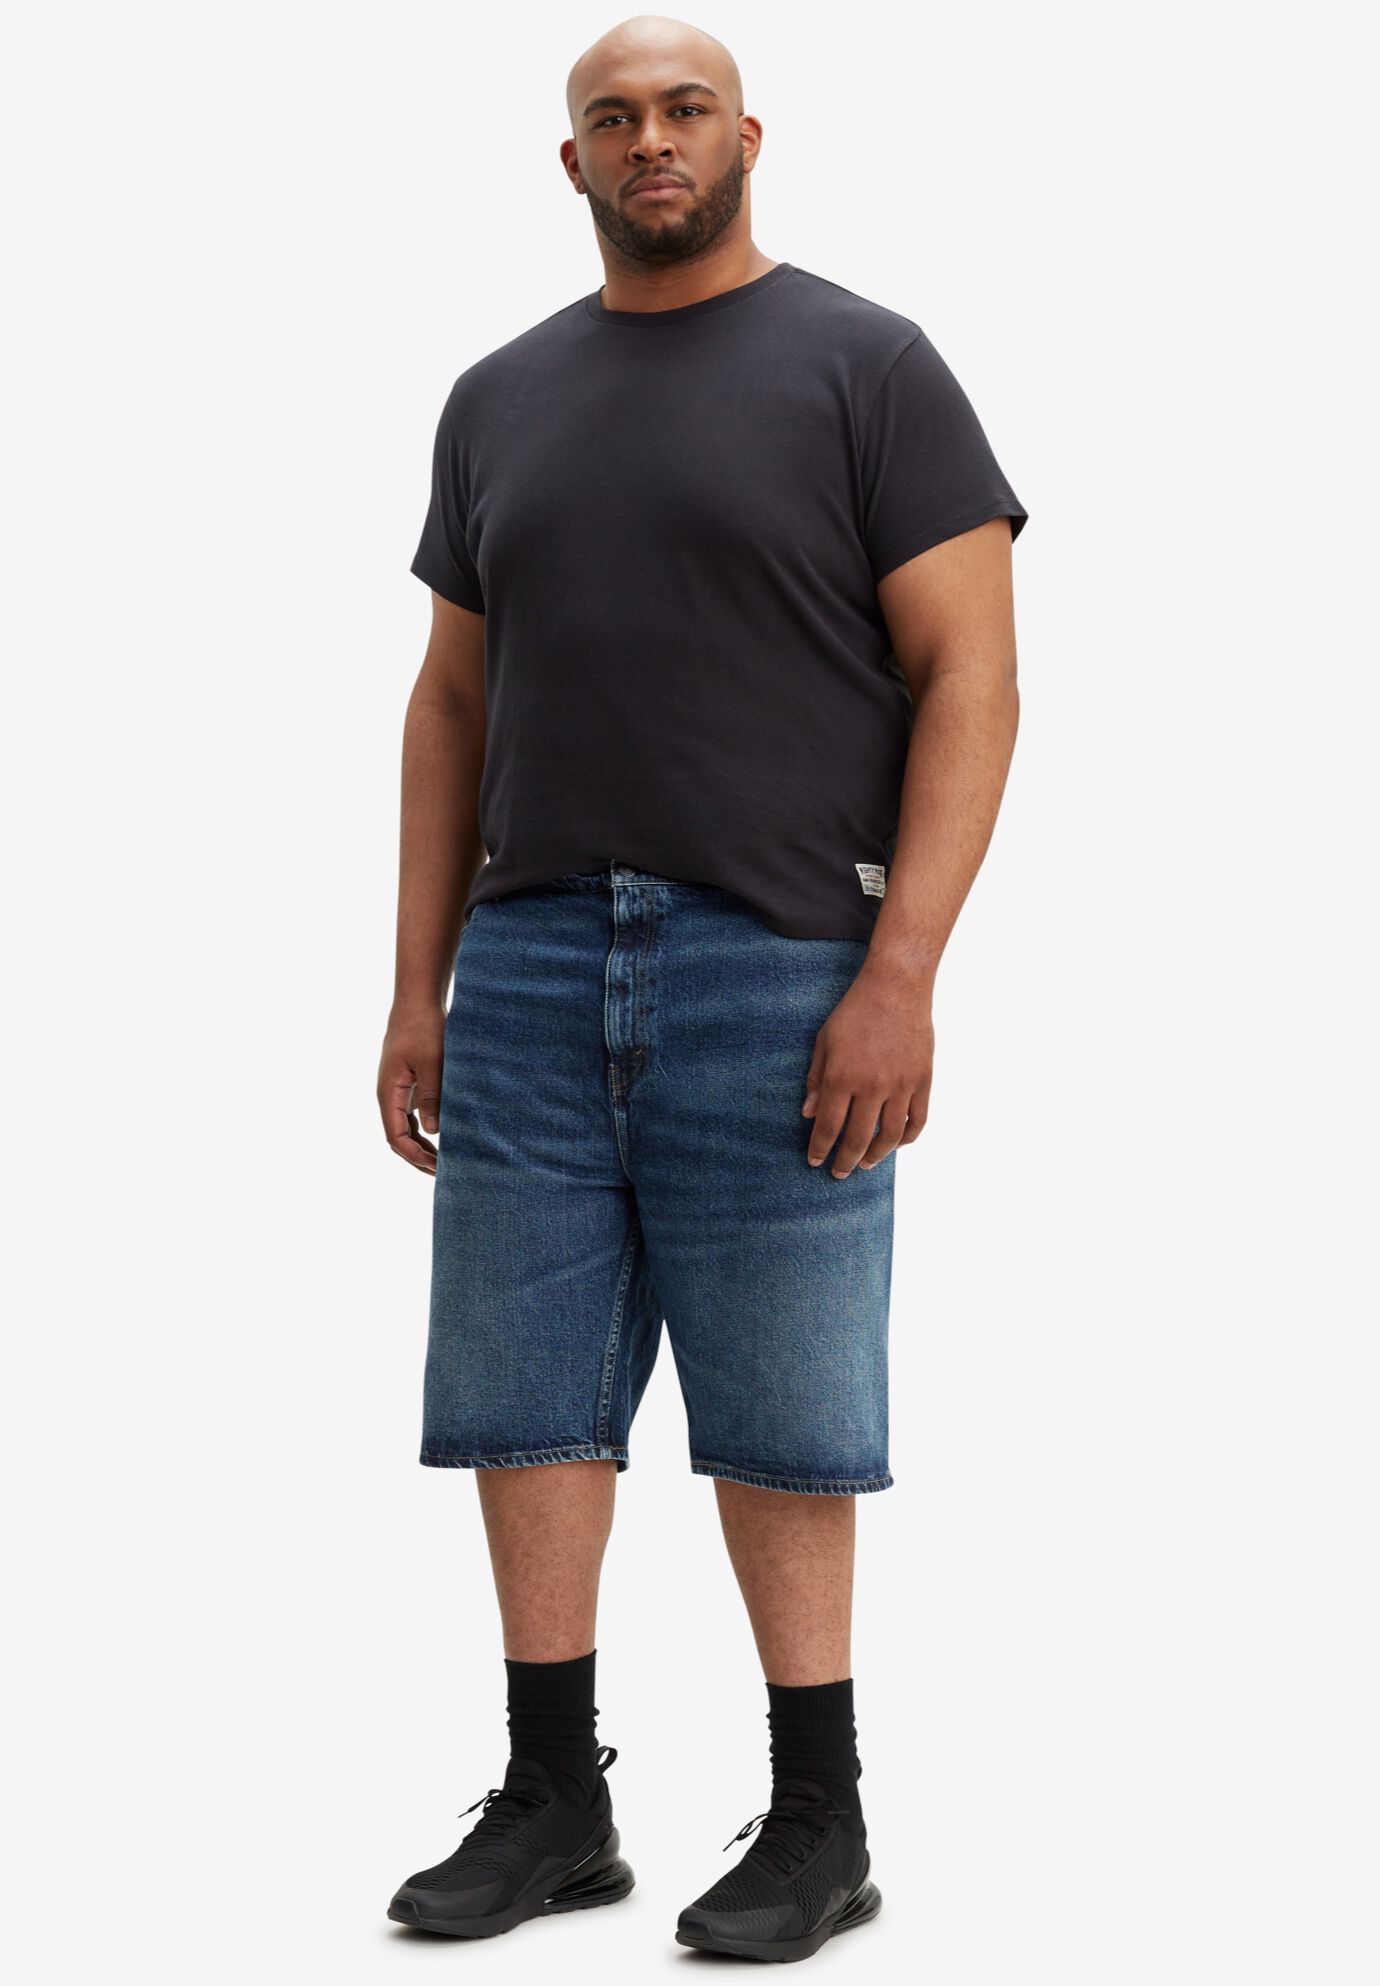 levis 569 shorts size 34